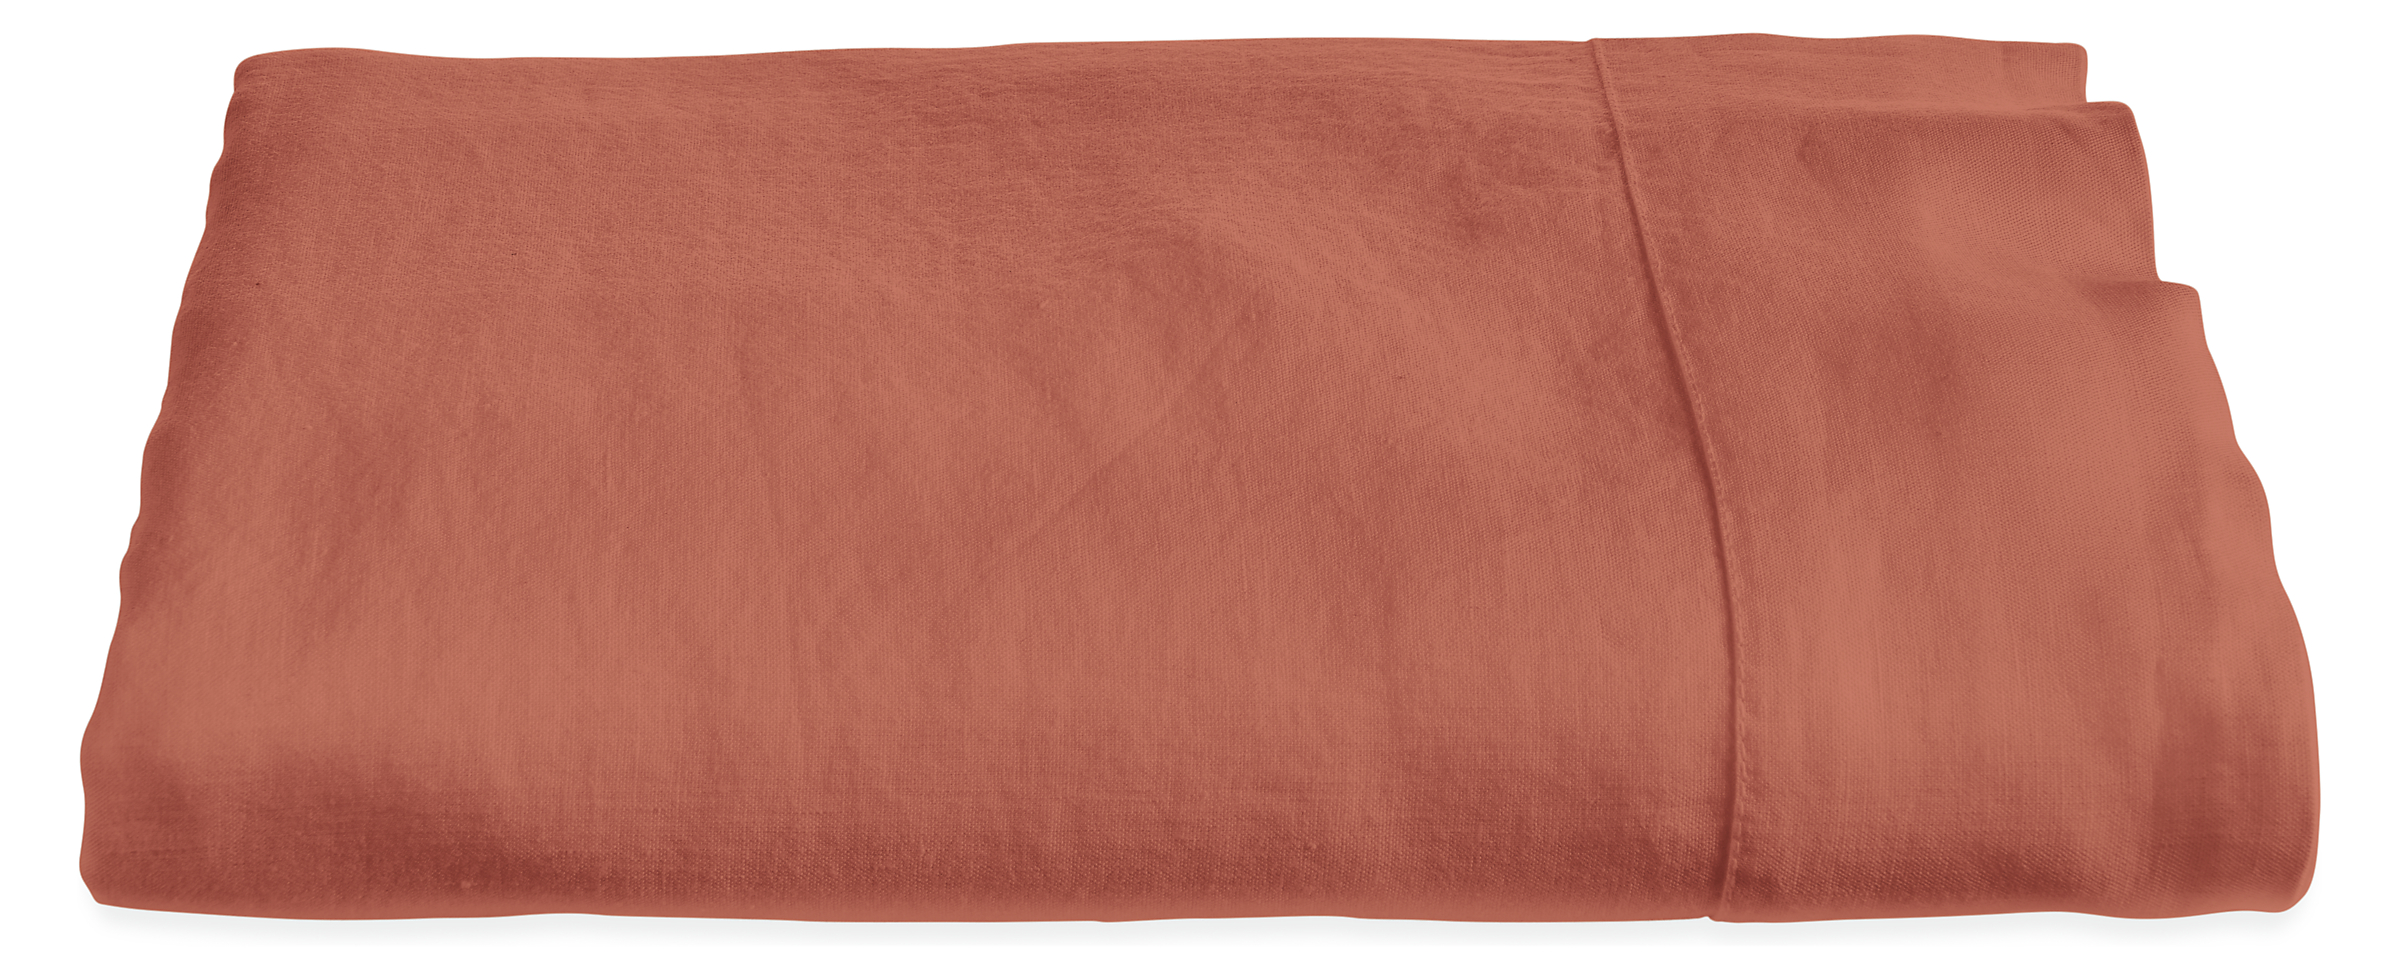 Relaxed Linen King Flat Sheet